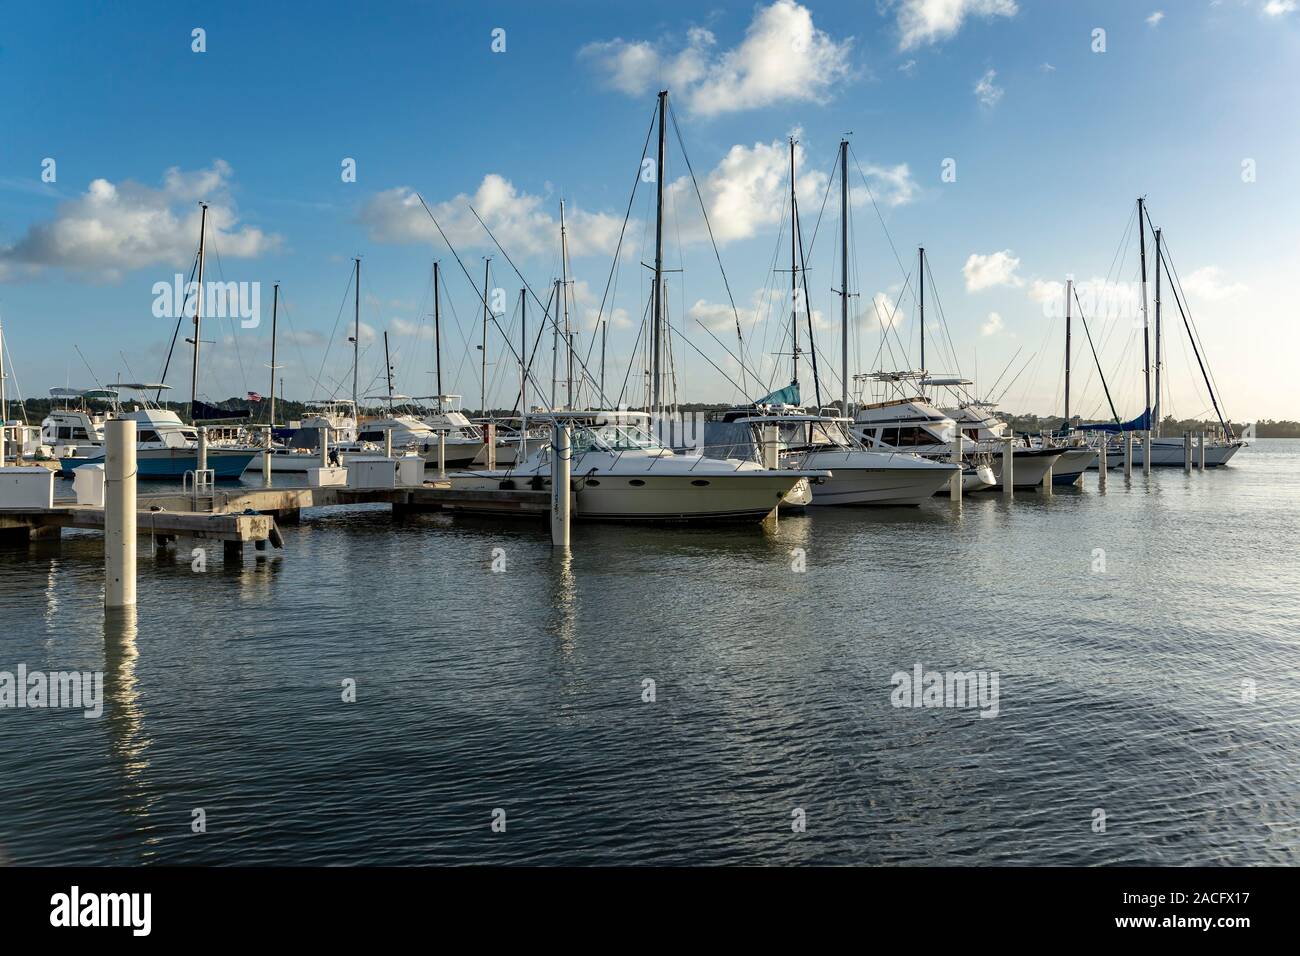 Boats docked in marina, Puerto Real fishing village, Cabo Rojo, Puerto Rico  Stock Photo - Alamy